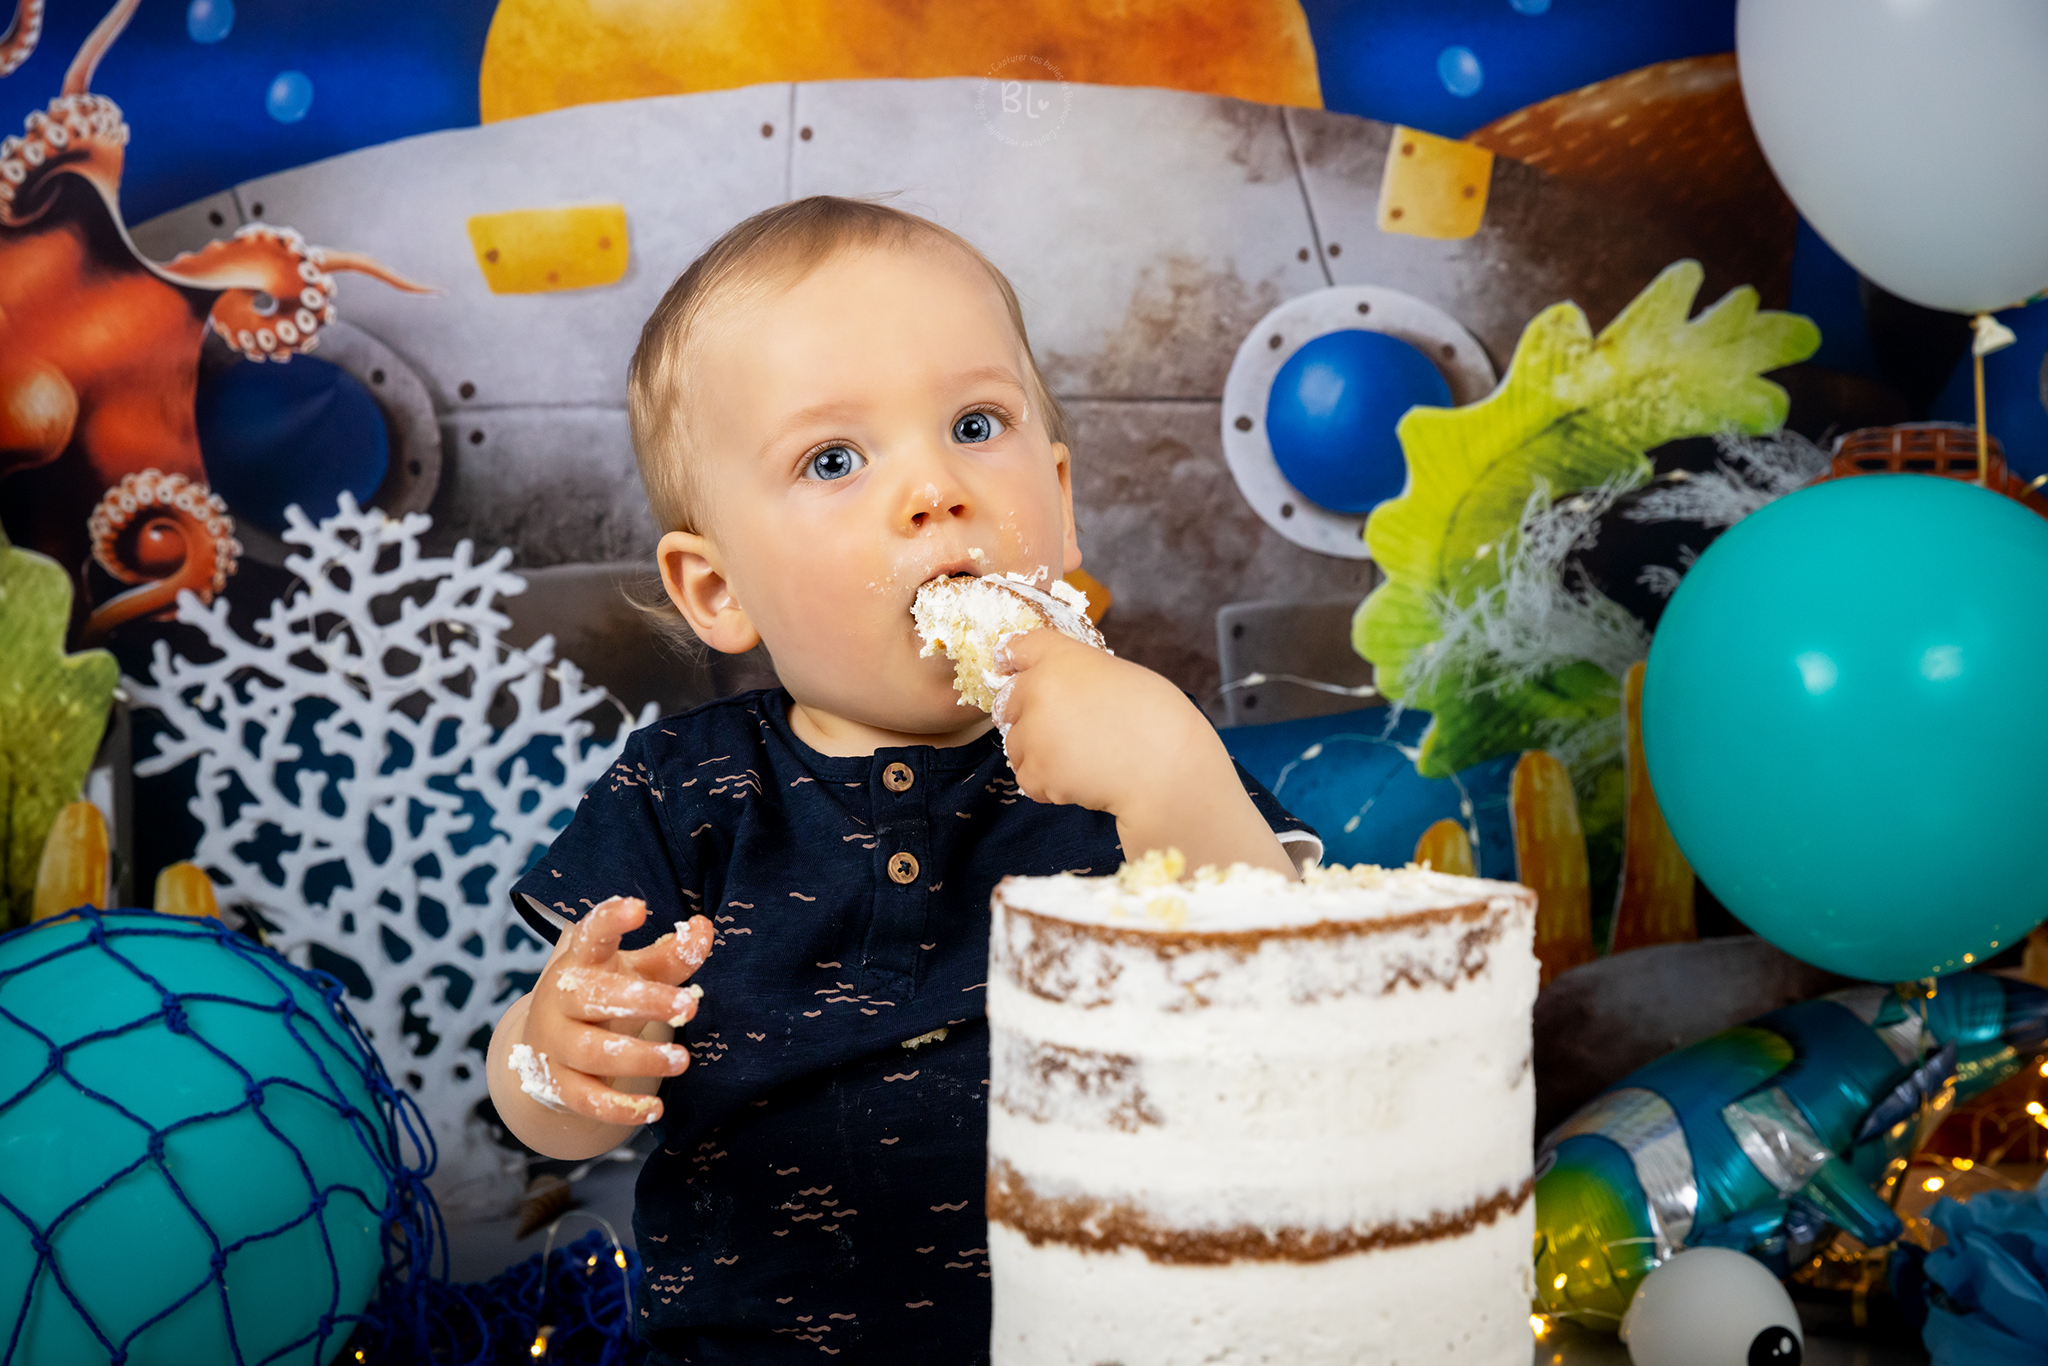 séance-photo-smash-cake-anniversaire-enfant-bébé-plouzané-brest-mer-thème